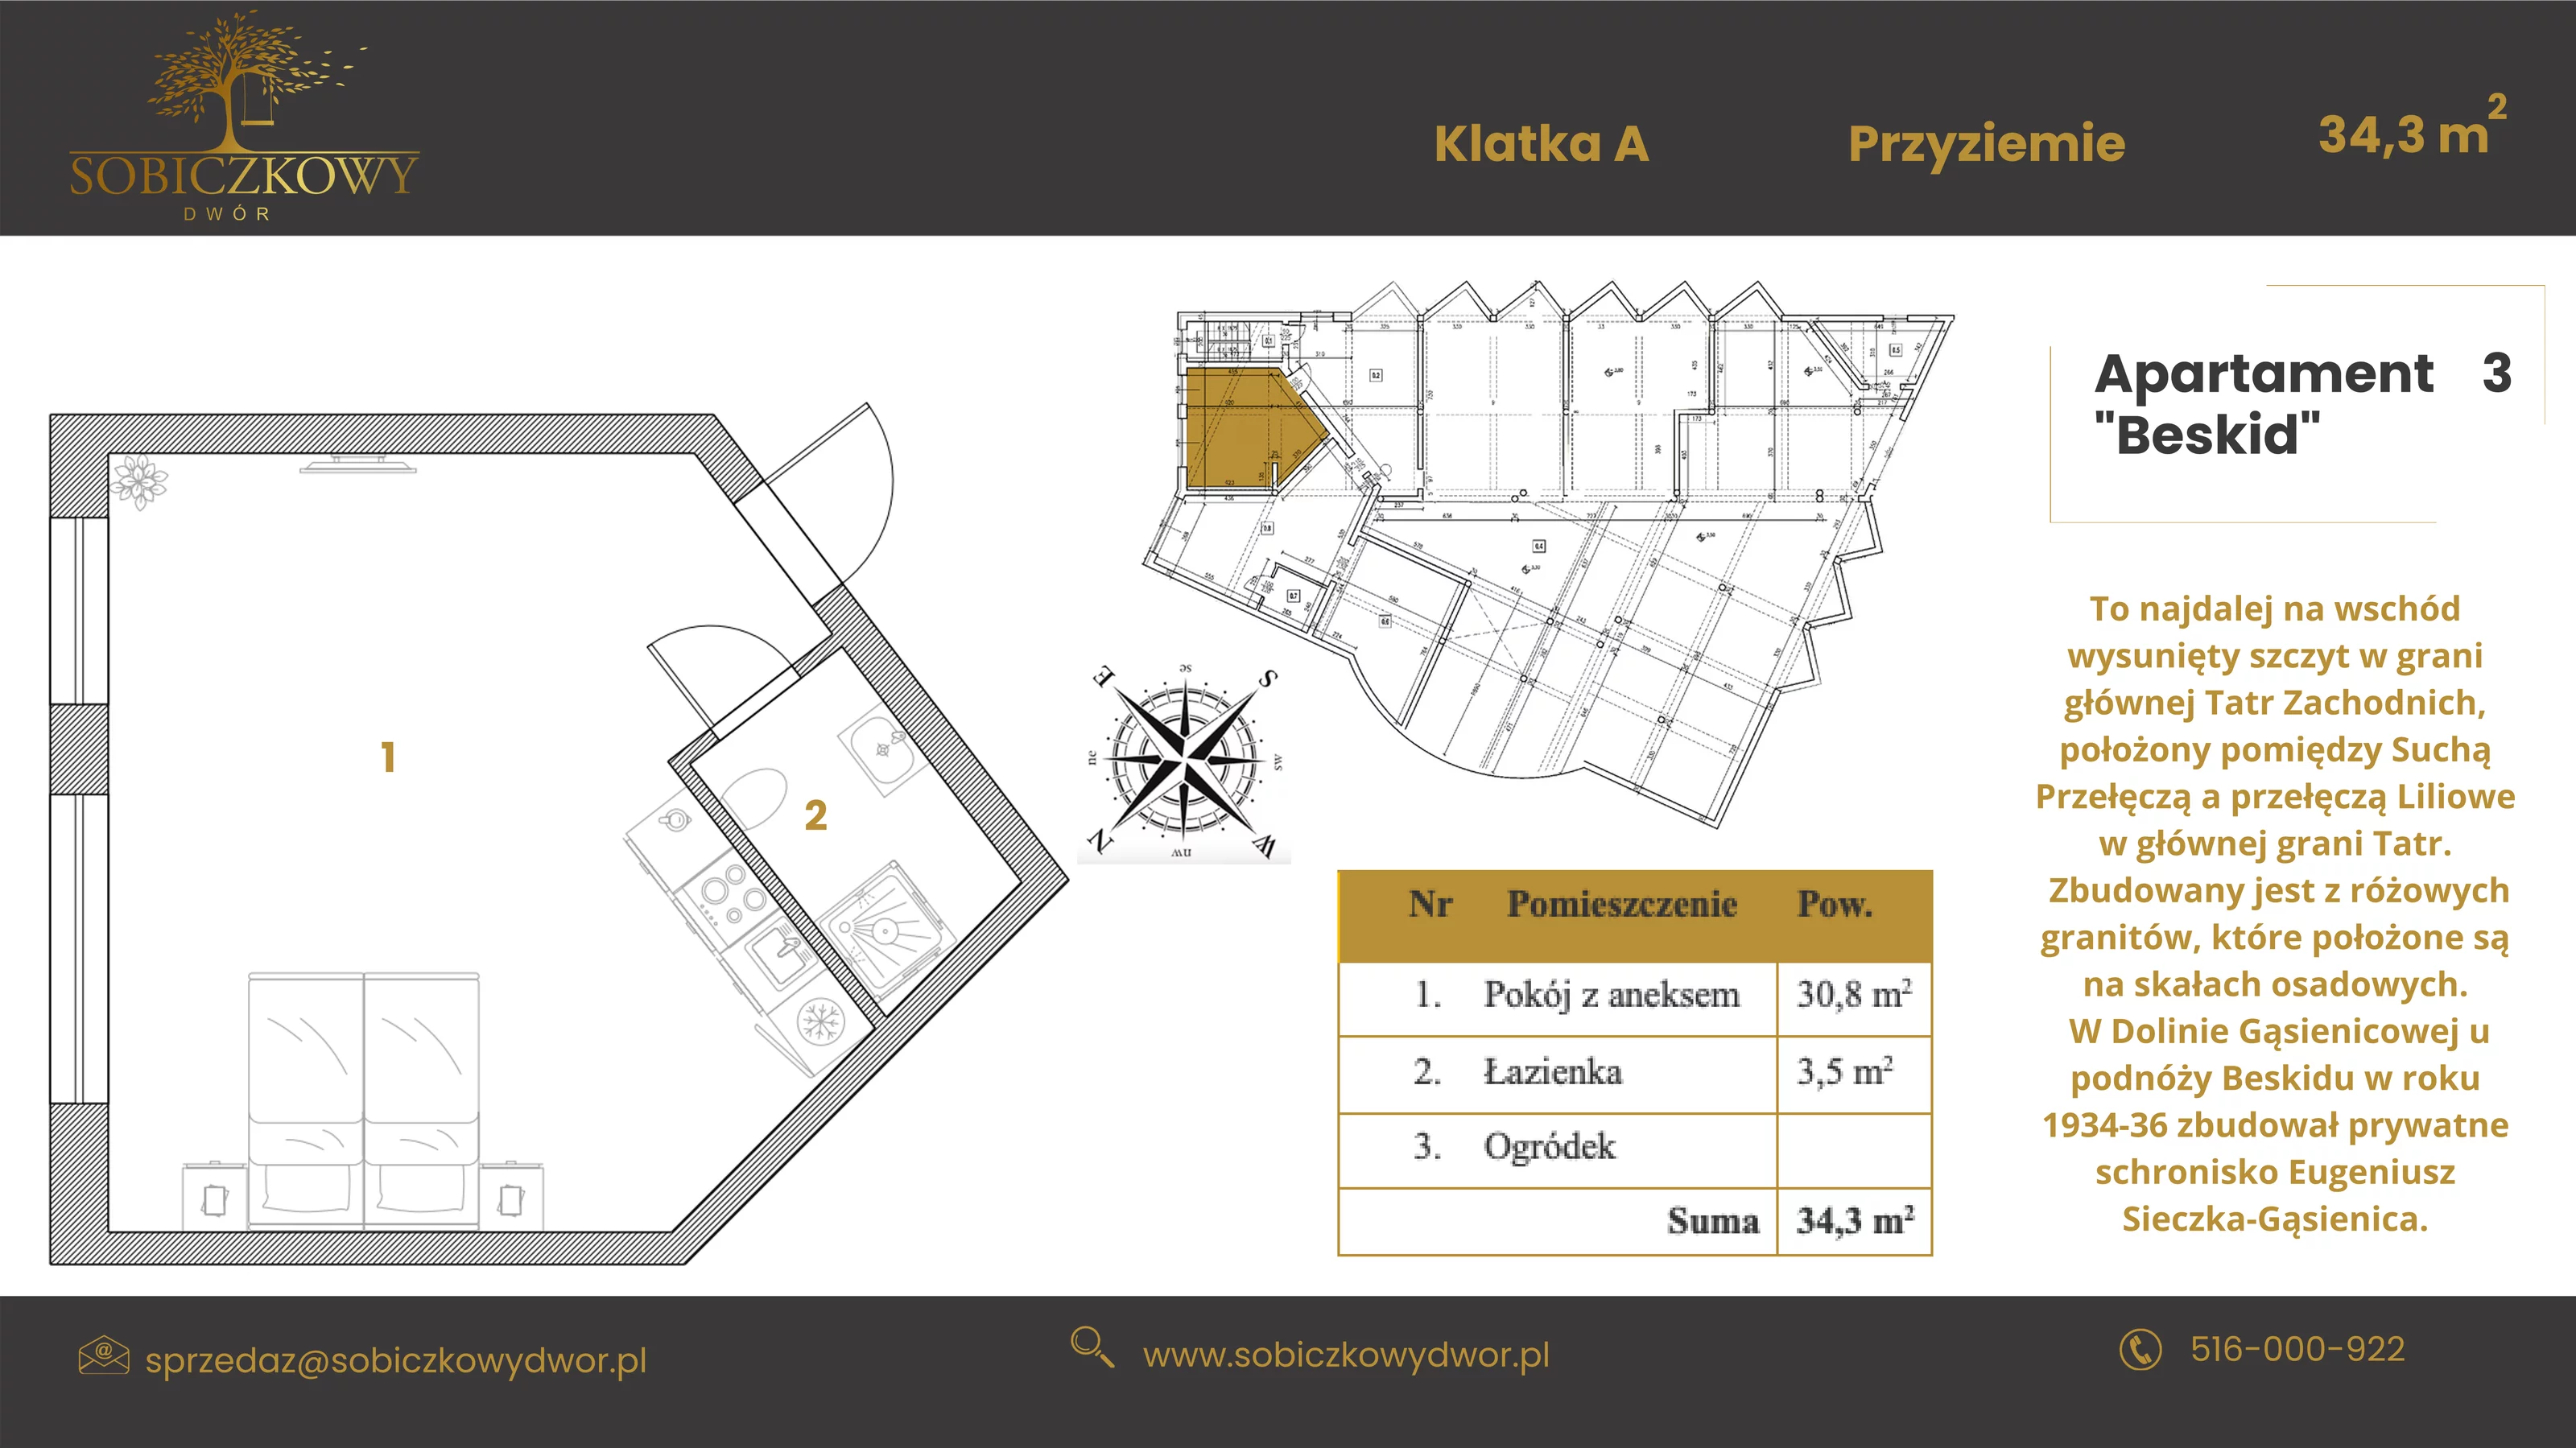 Apartament 34,30 m², poziom -1, oferta nr 3 "Beskid", Sobiczkowy Dwór, Kościelisko, ul. Sobiczkowa Bór 1